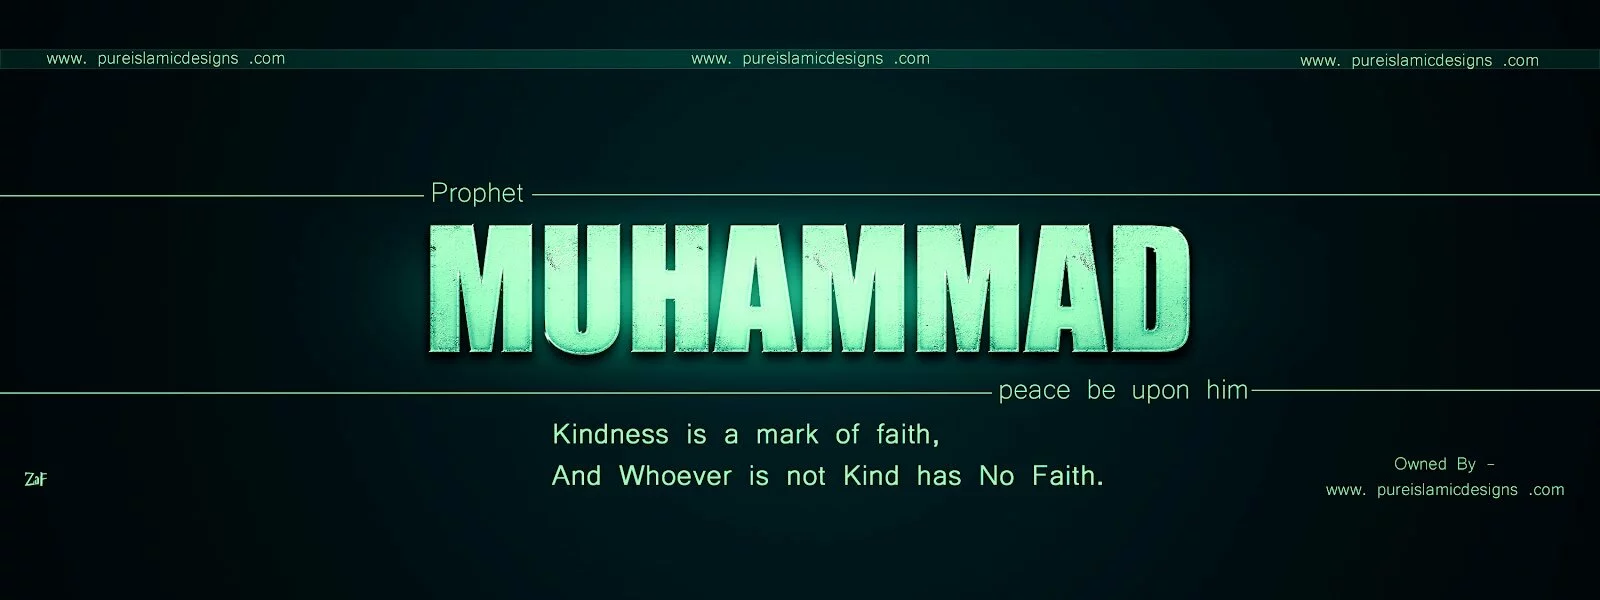 Prophet Muhammad (pbuh) FB Timeline